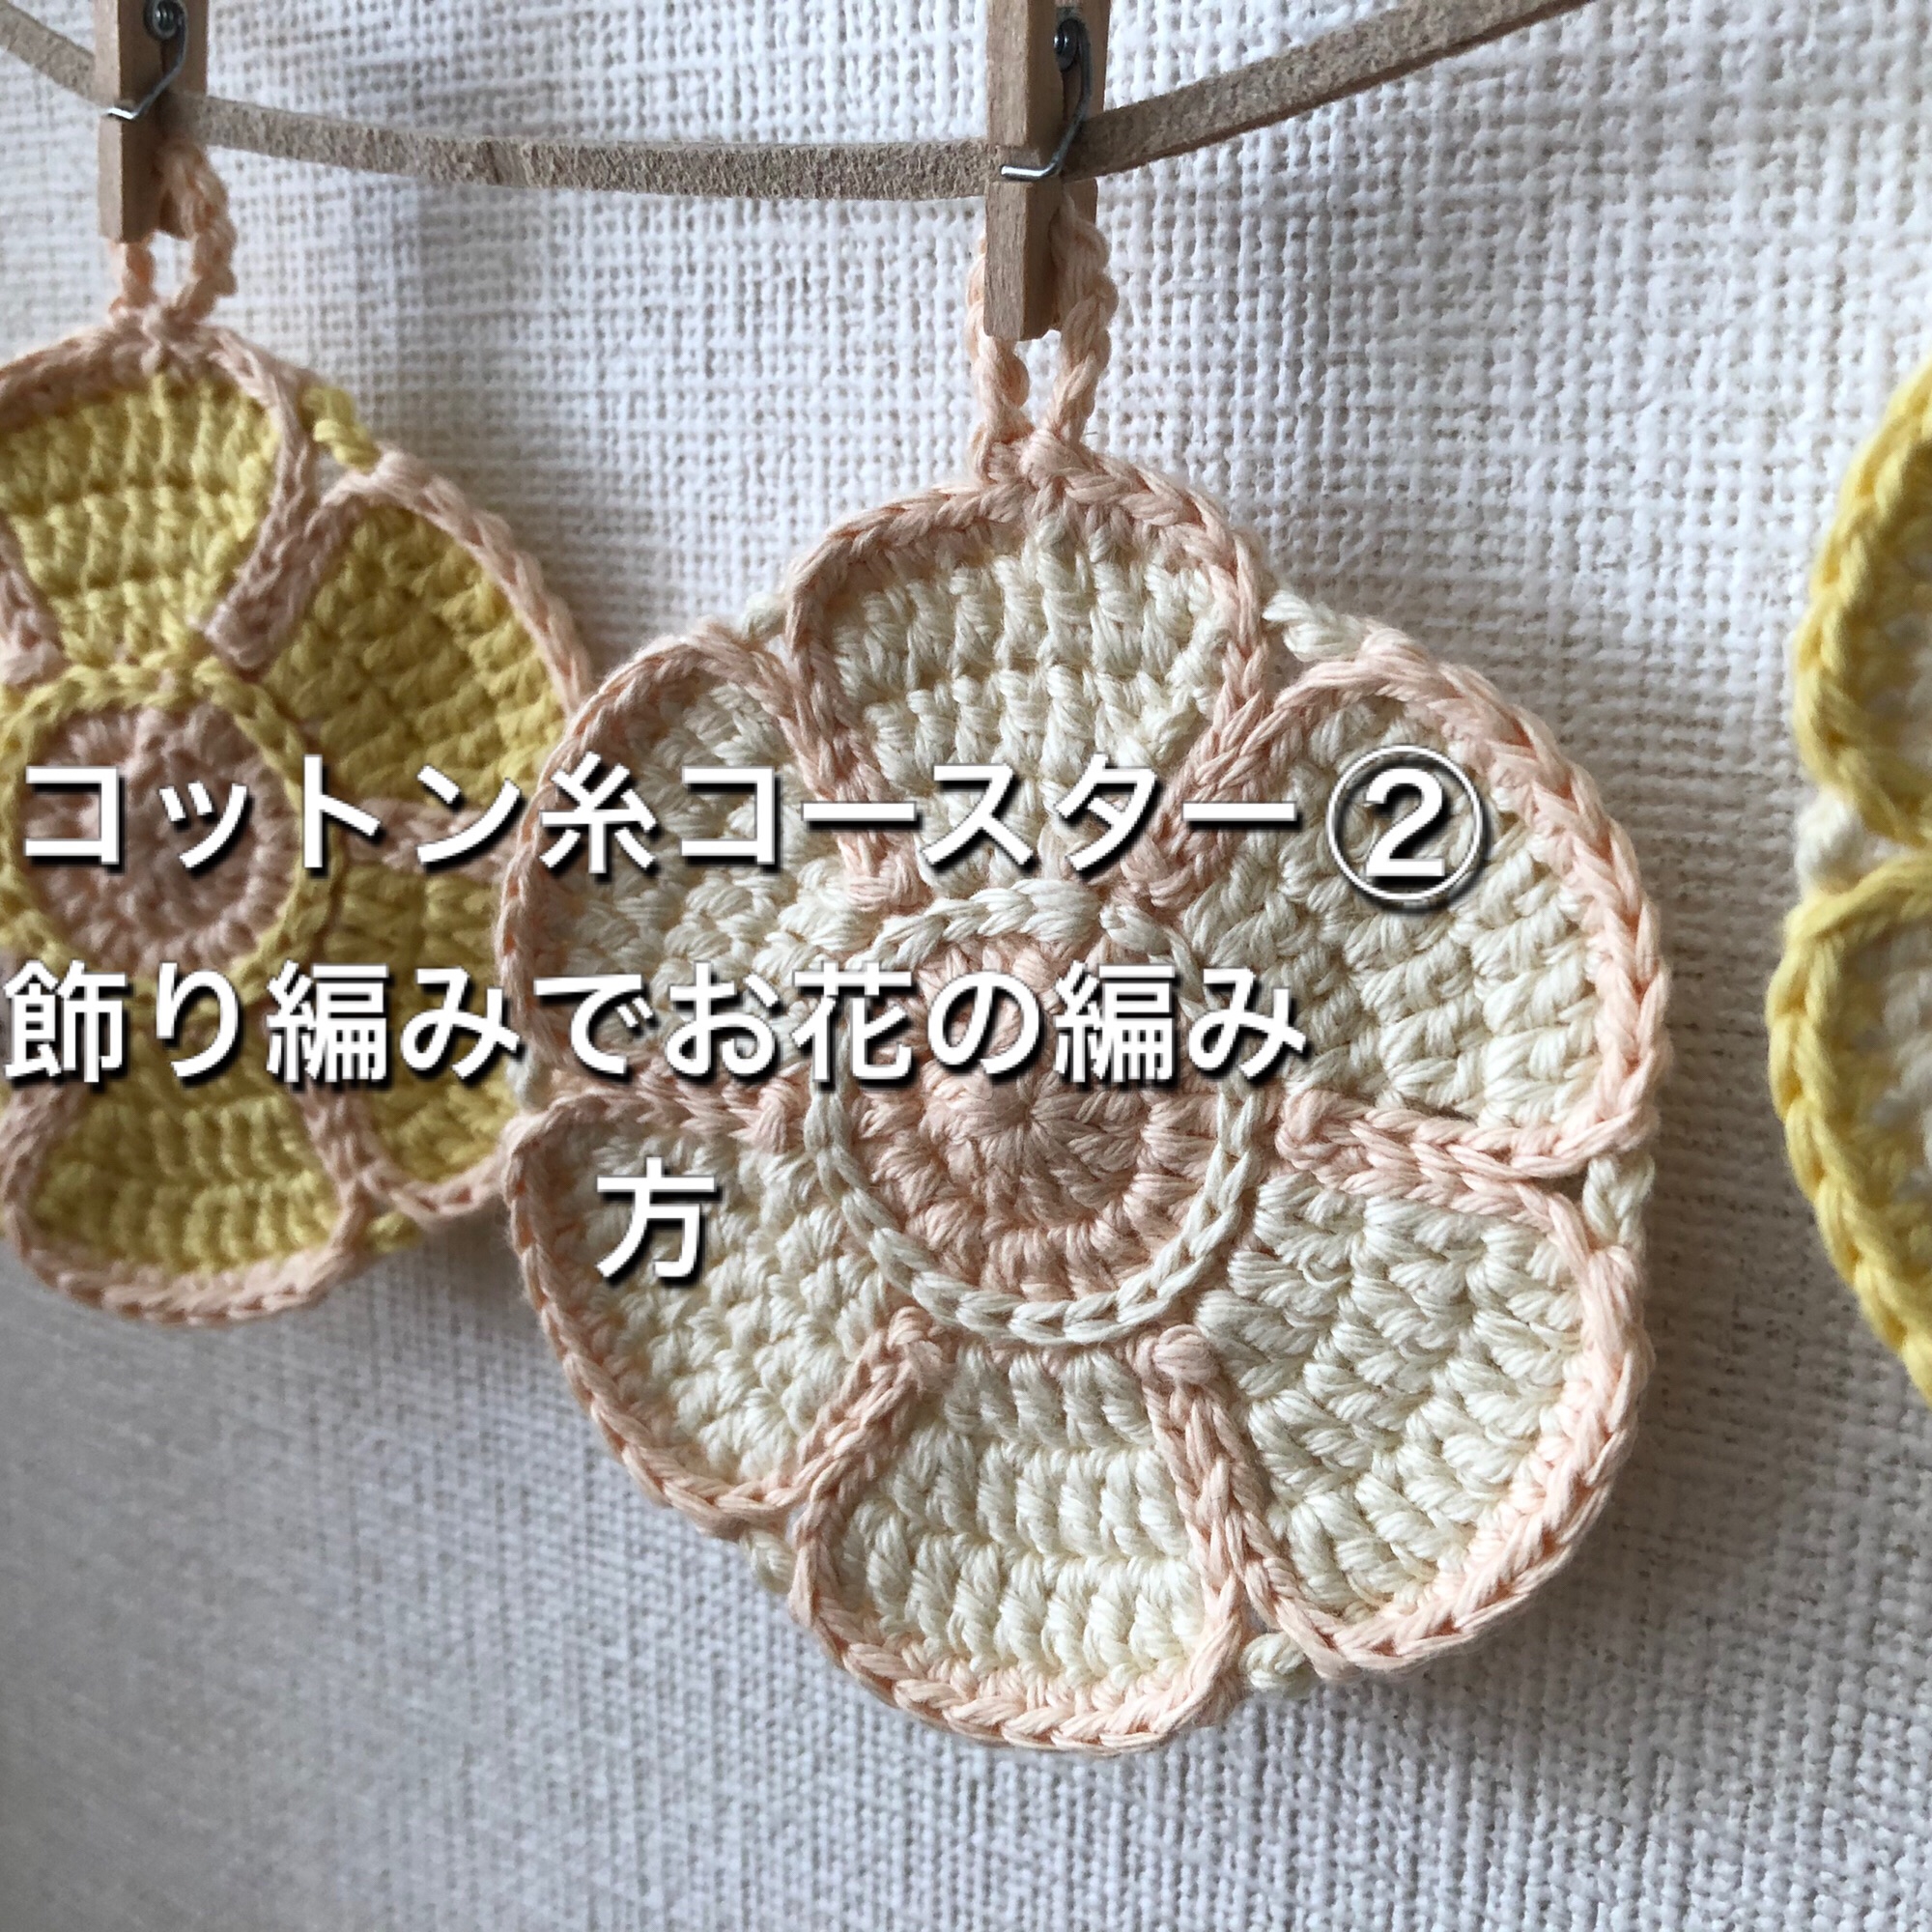 コットン糸で小花のコースターの編み方 飾り編みをしてお花にする Mikakoの暮らしの中のハンドメイド